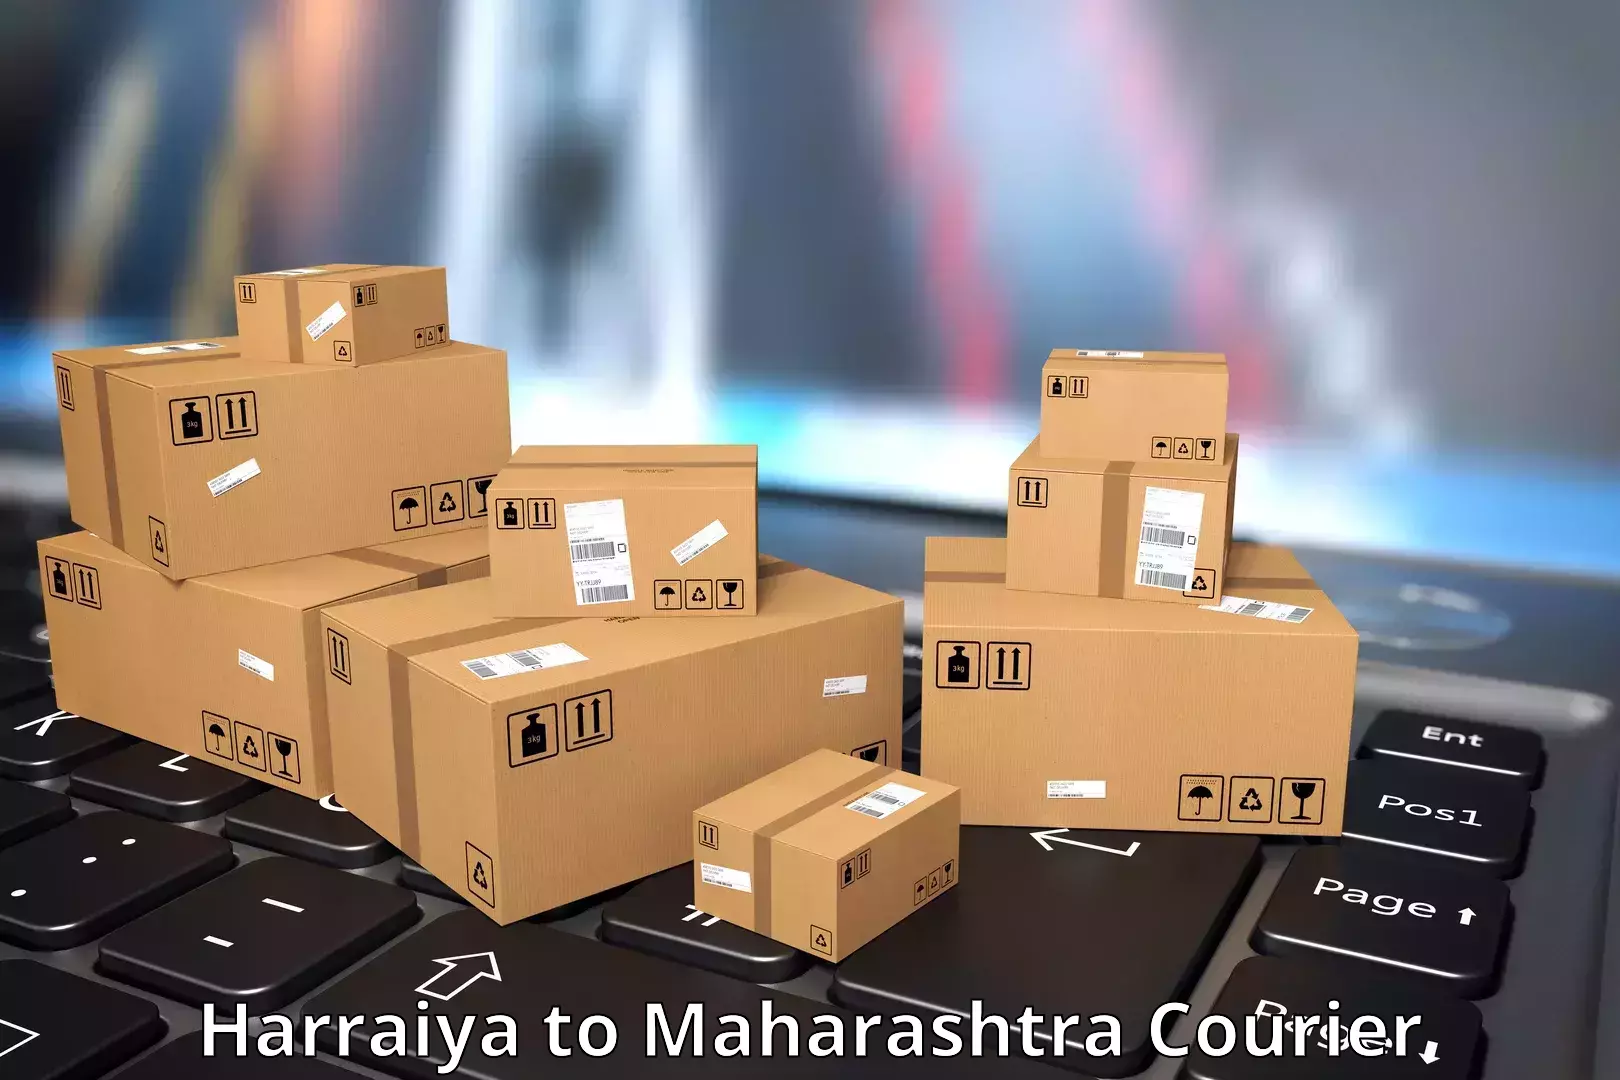 On-call courier service Harraiya to Maharashtra